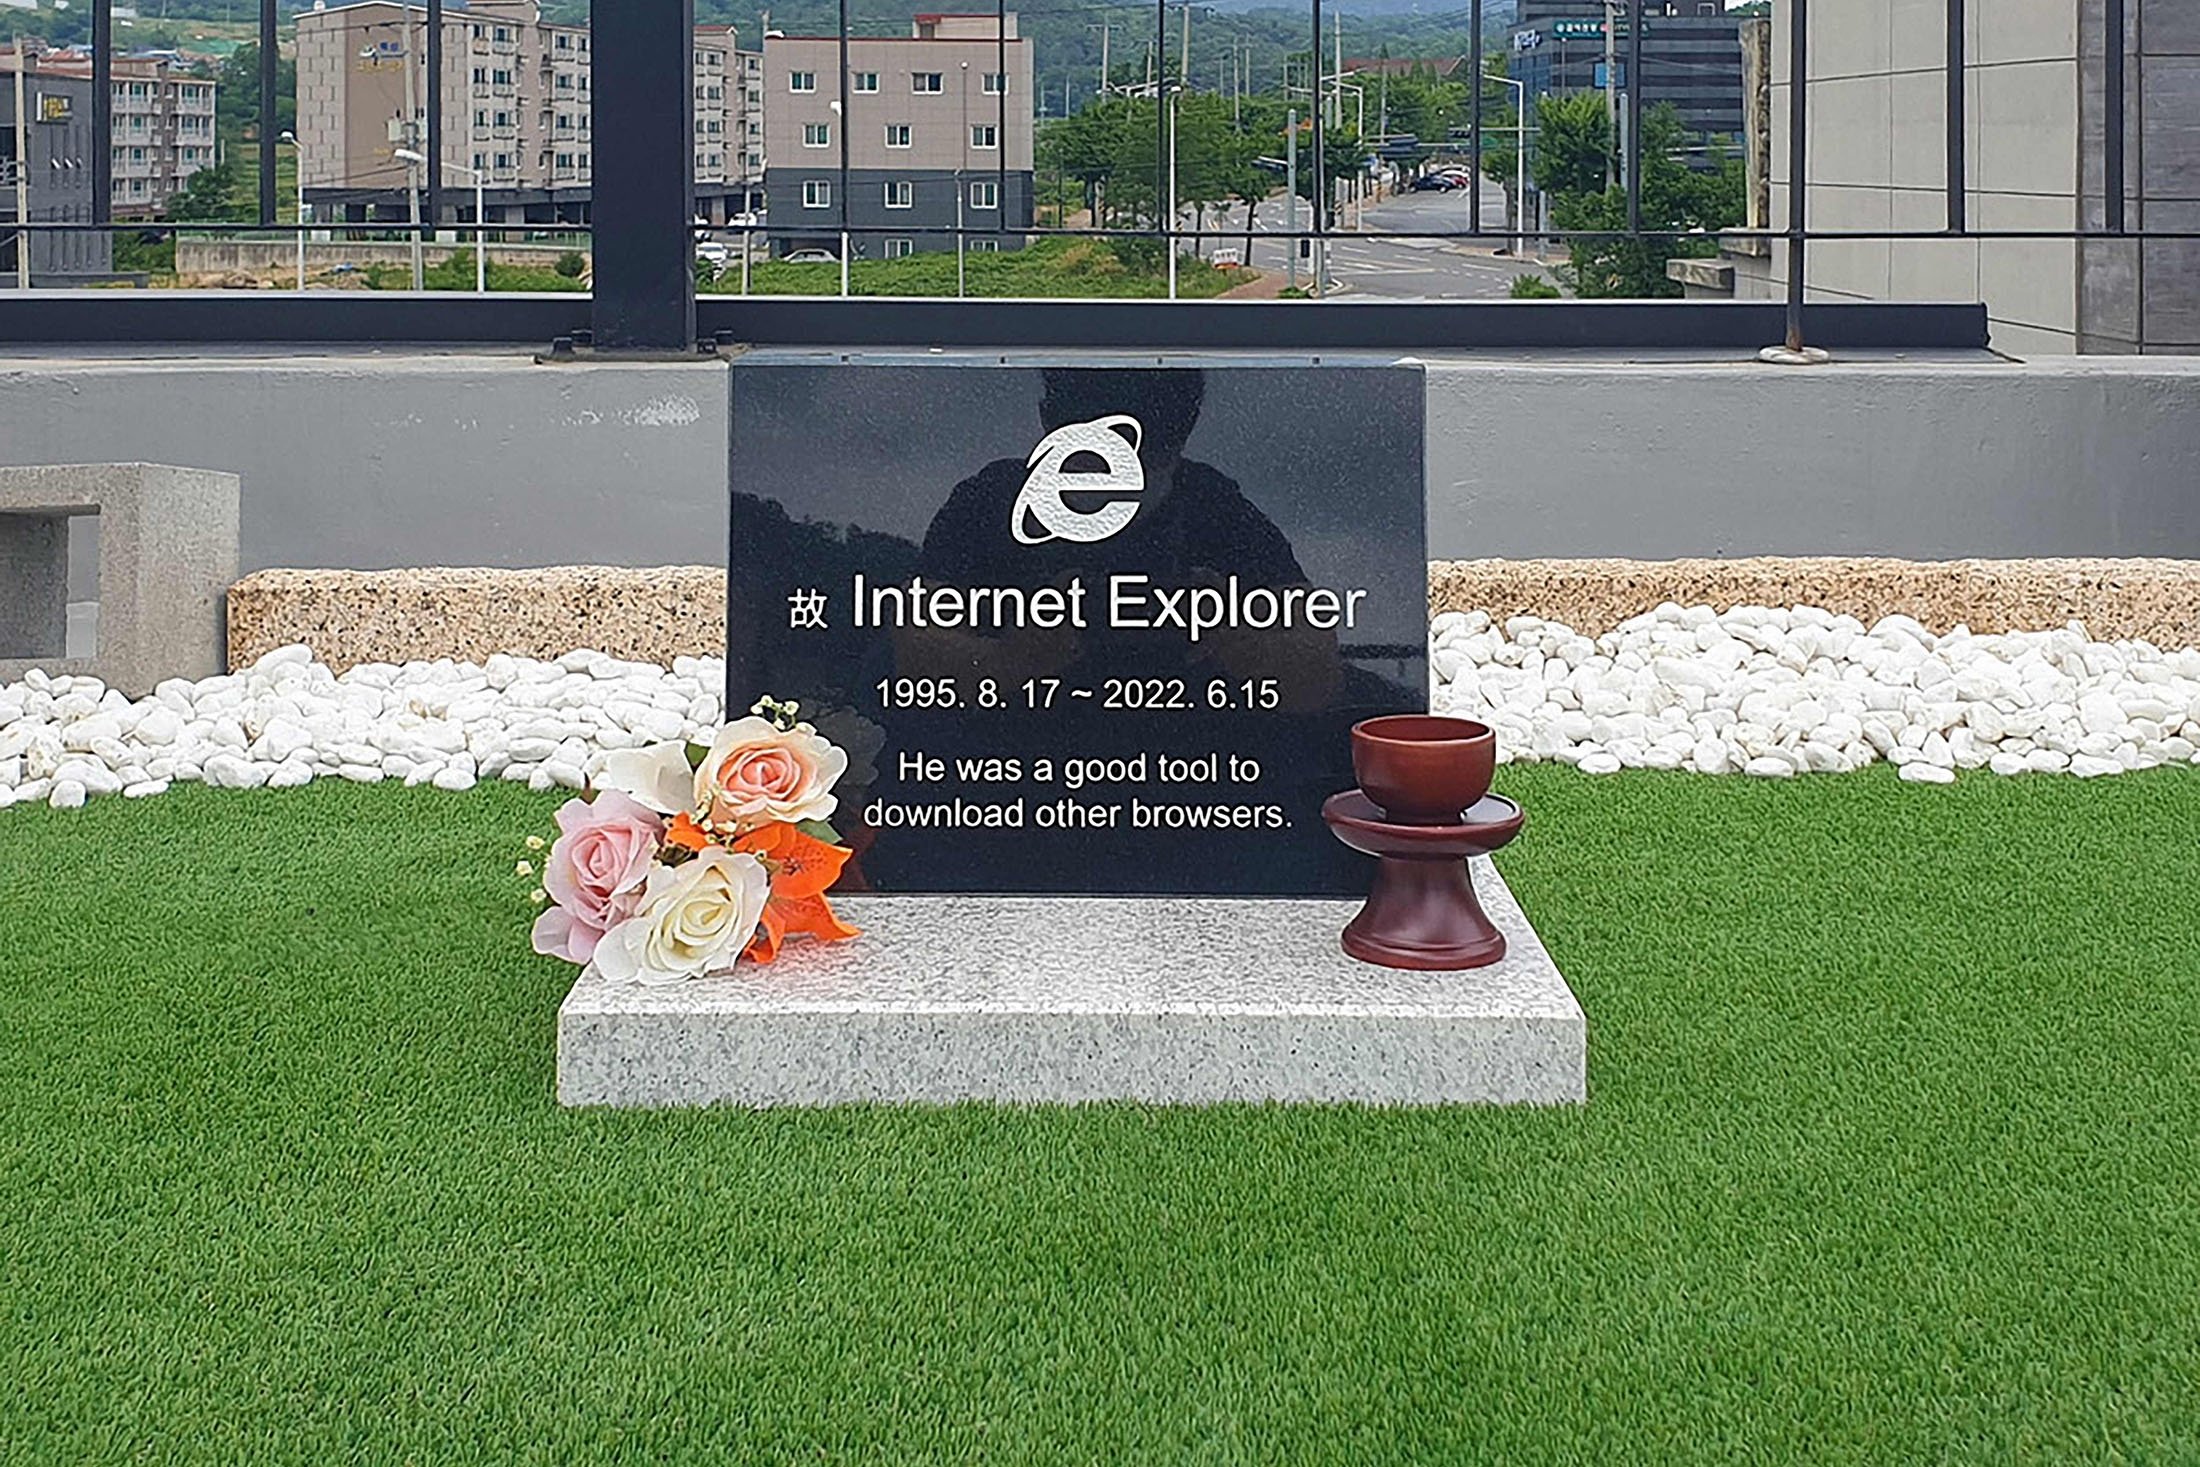 Batu nisan browser Internet Explorer, dibuat oleh insinyur perangkat lunak Korea Selatan Jung Ki-young, di atap sebuah kafe di Gyeongju, Korea Selatan, 17 Juni 2022. (Jung Ki-Young via AFP)